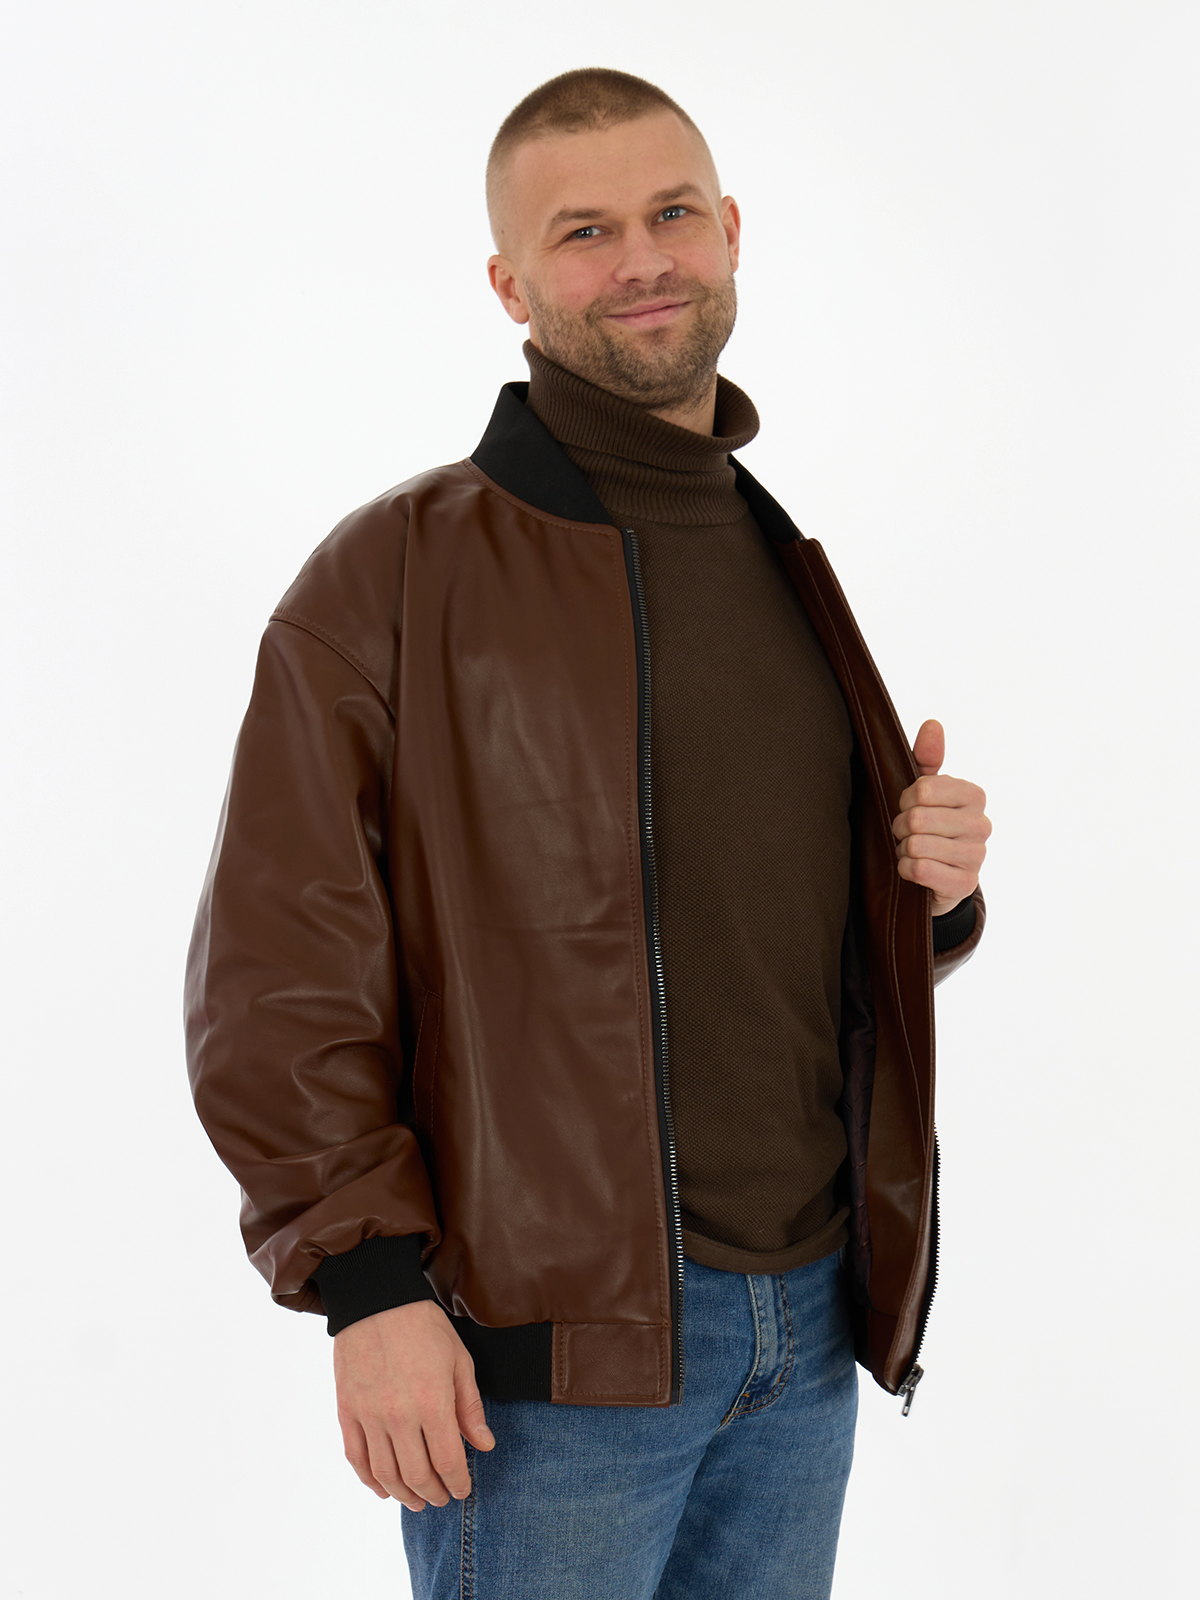 Кожаная куртка мужская Дубленкин BOMBM коричневая 56 RU